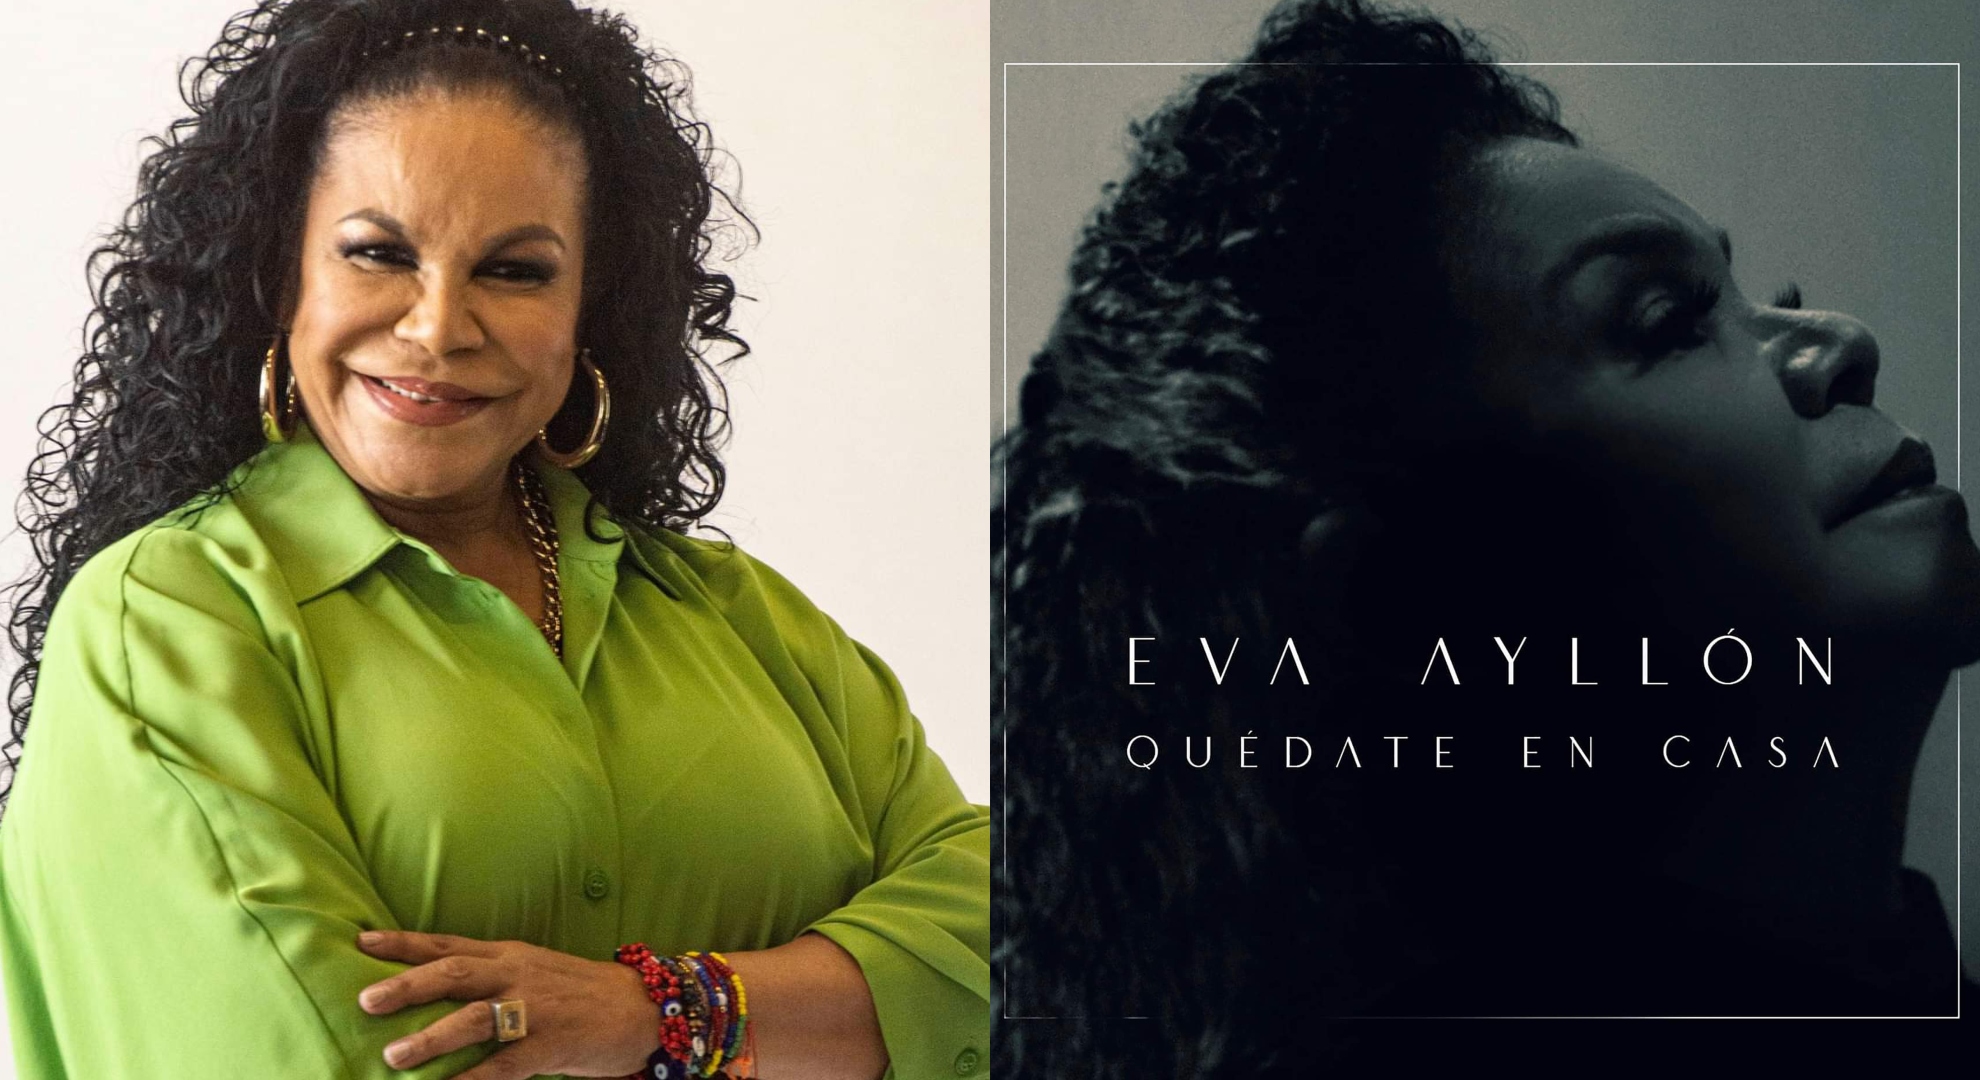 Latin Grammy: Eva Ayllón recuerda cómo grabó “Quédate en casa”, el disco que le valió una nominación